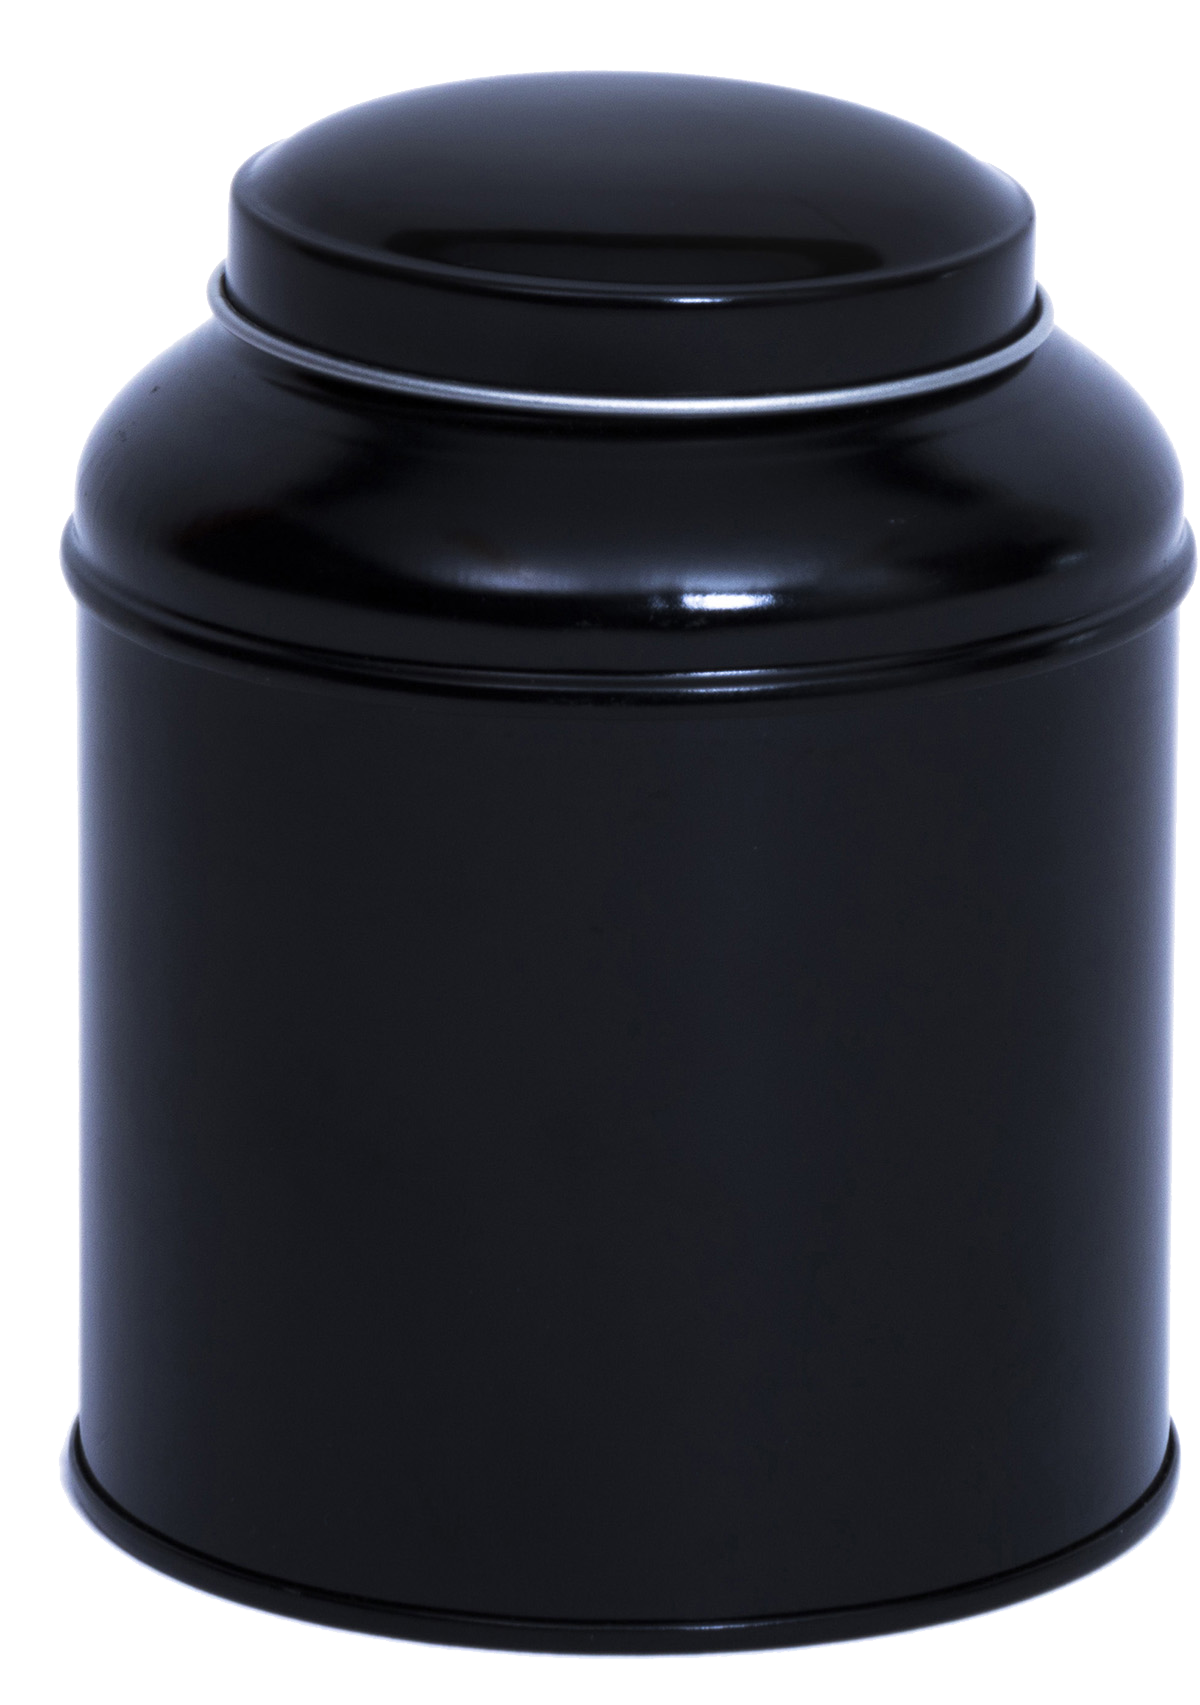 Eversdal Theeblik nr 3. medium zwart met binnensluiting (125 gram) - BESTSELLER 20% KORTING